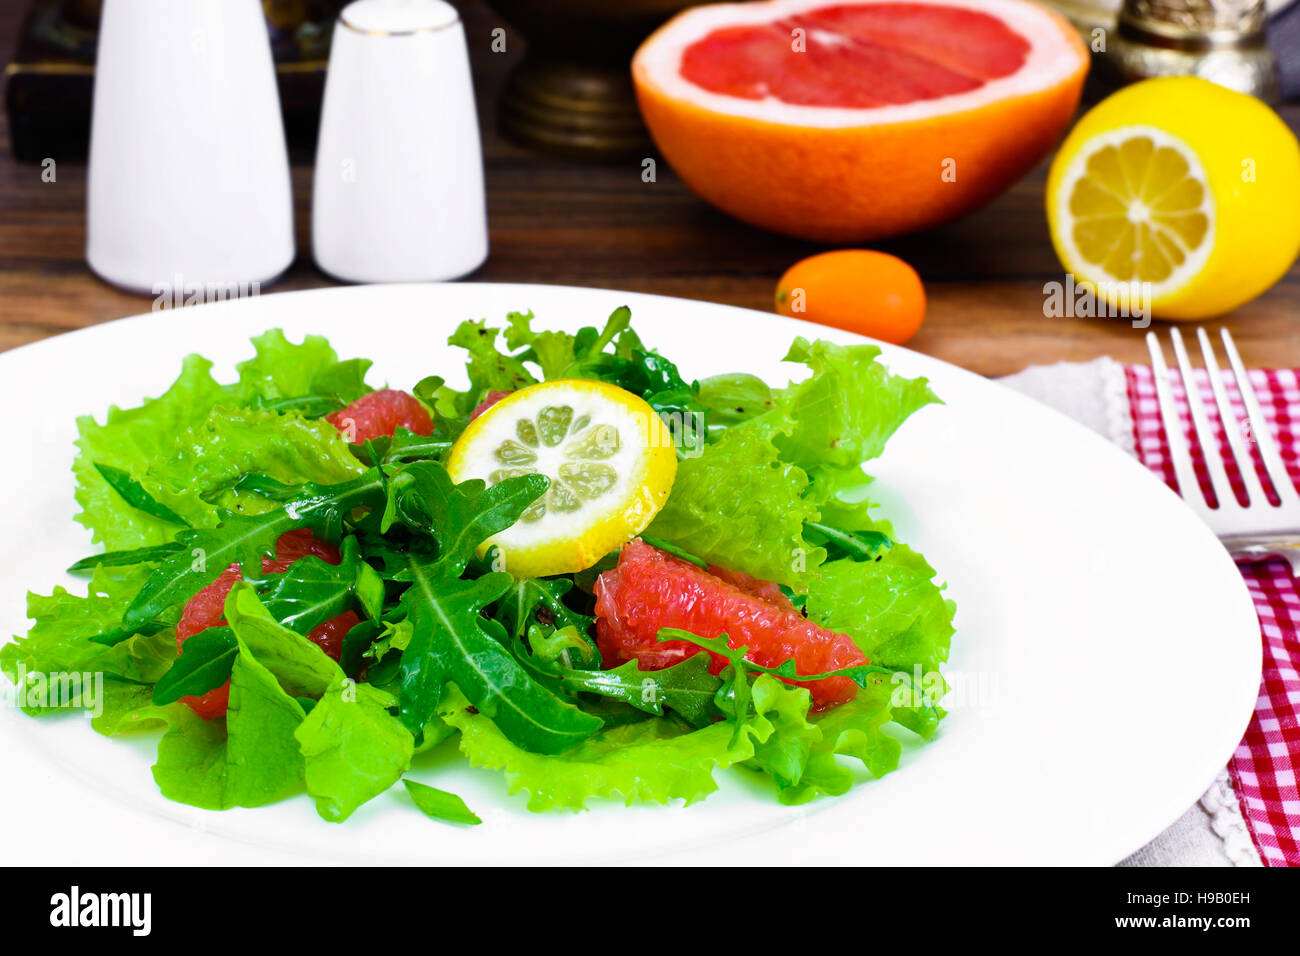 Salad with Mix Batavian, Frise, Radicchio, Chicory, Arugula and Grapefruit Studio Photo Stock Photo